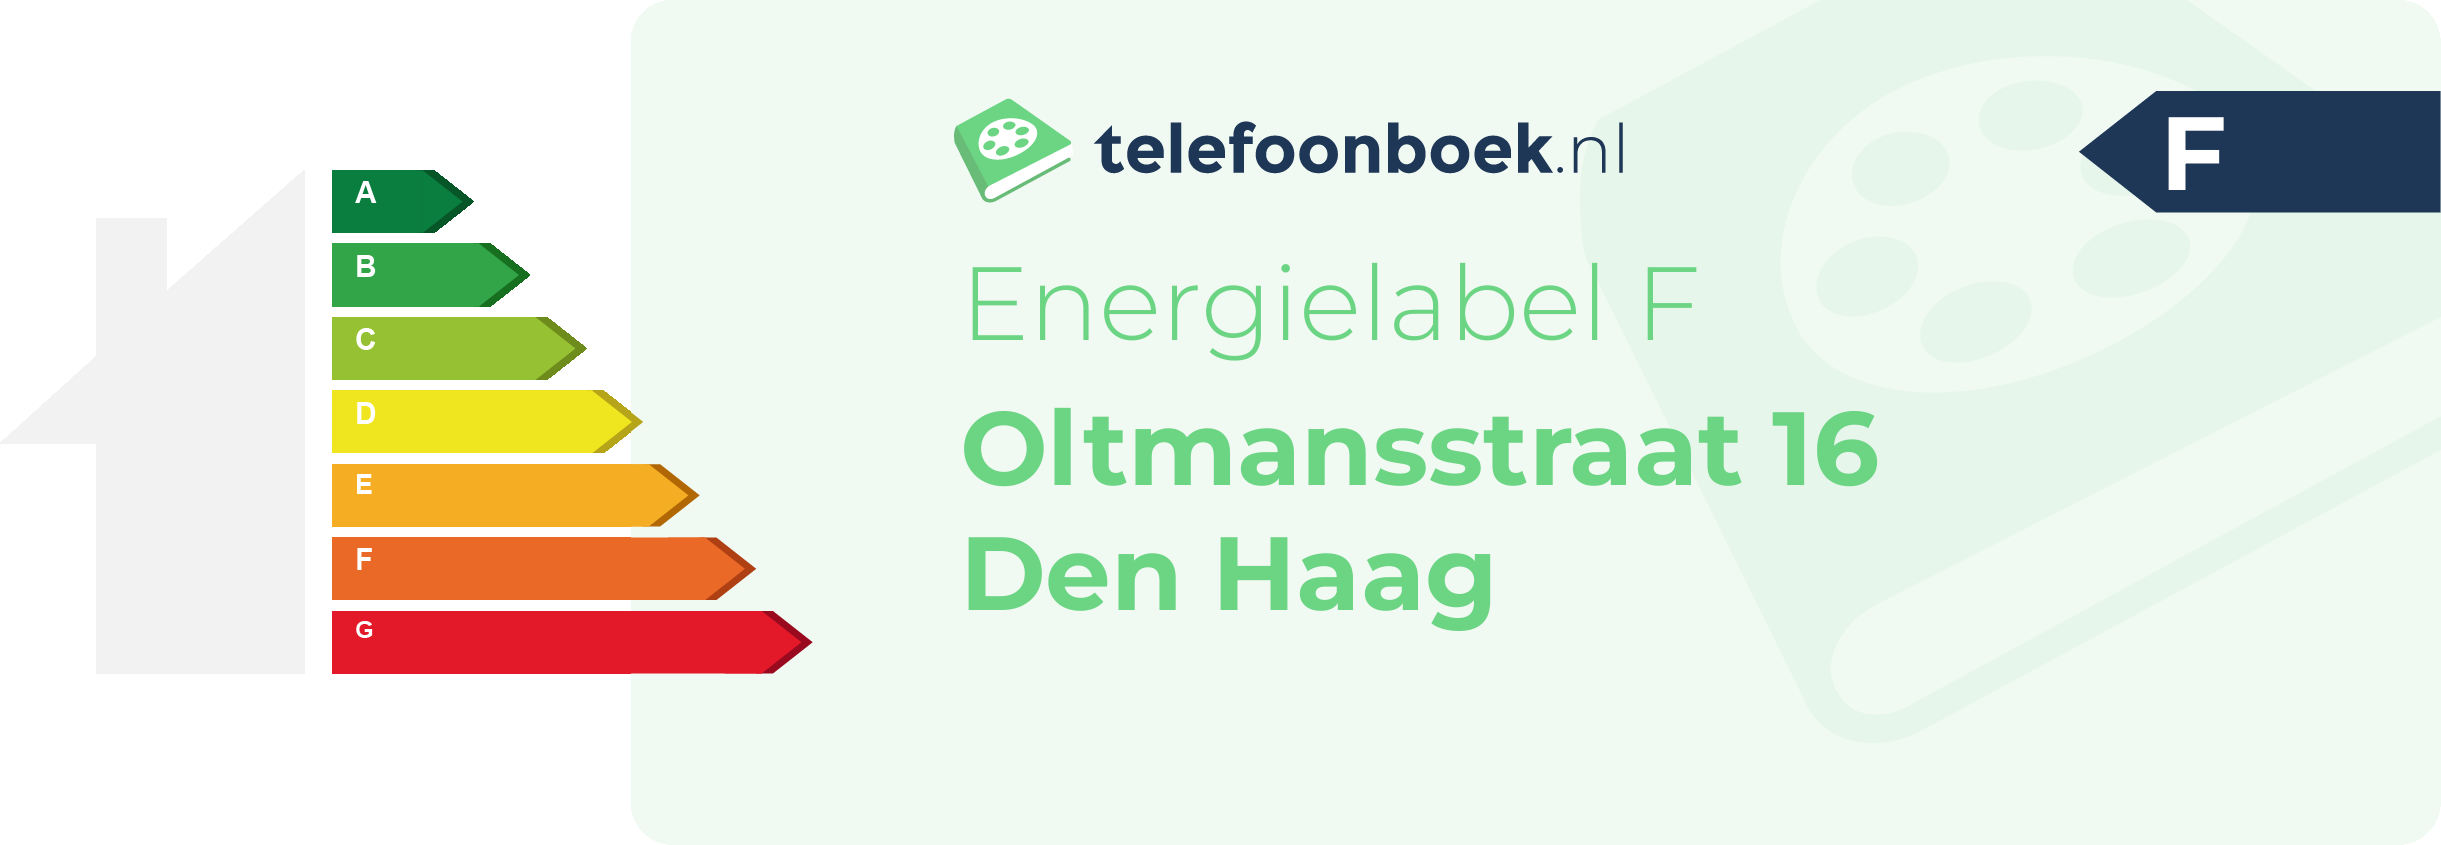 Energielabel Oltmansstraat 16 Den Haag